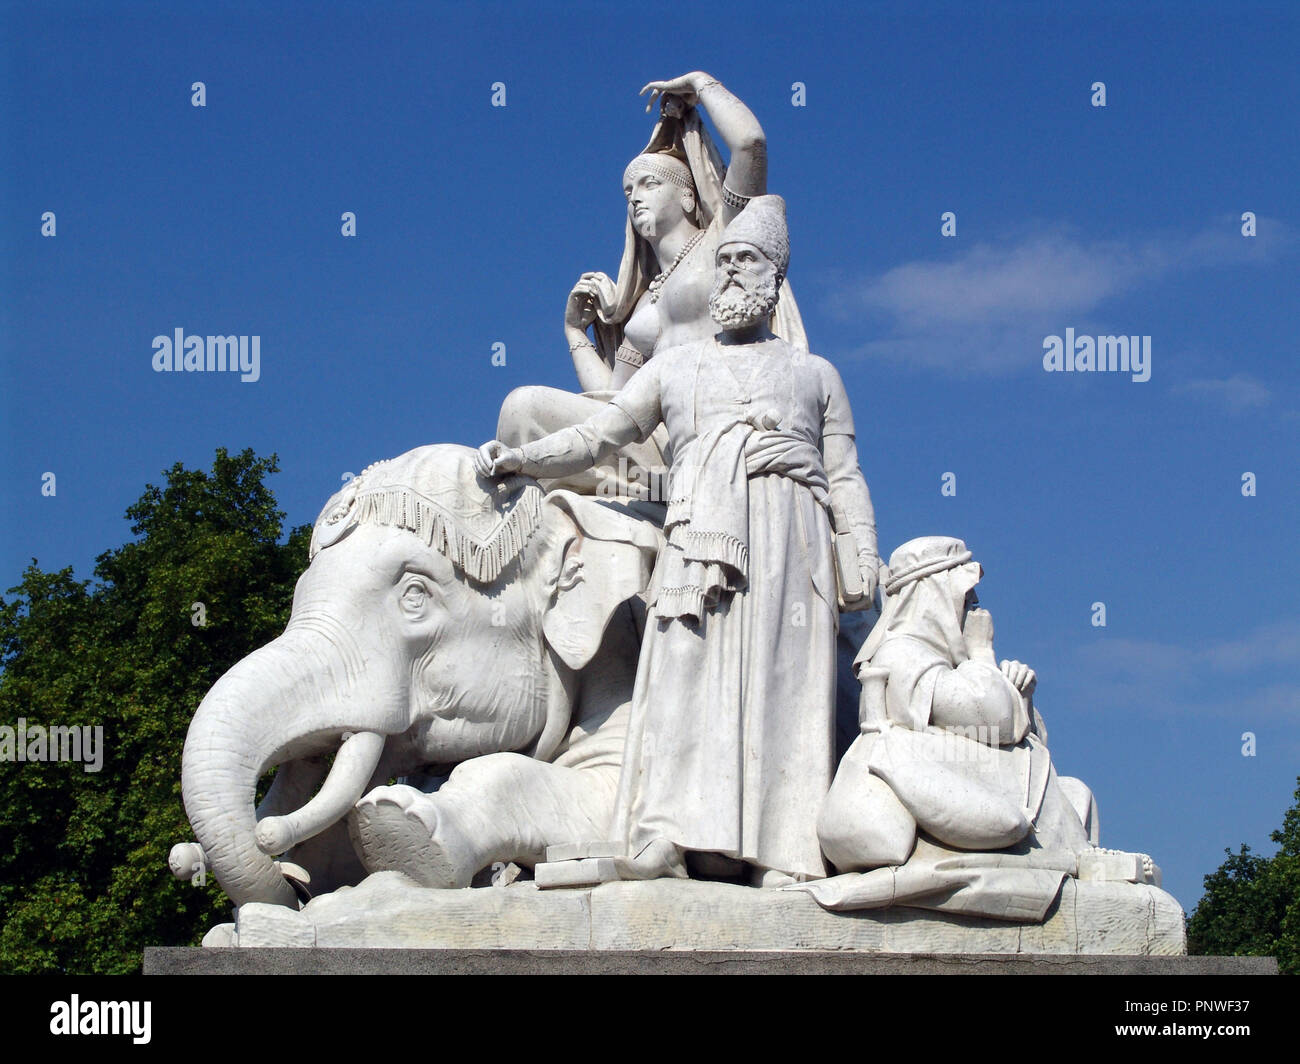 Grupo escultórico representando un ASIA, obra del escultor irlandés John Henry Foley (1818-1874). Simboliza la extensión del Imperio Británico. Se encuentra en el Albert Memorial, en los jardines de Kensington. Hyde Park. Londres. Inglaterra. Foto Stock